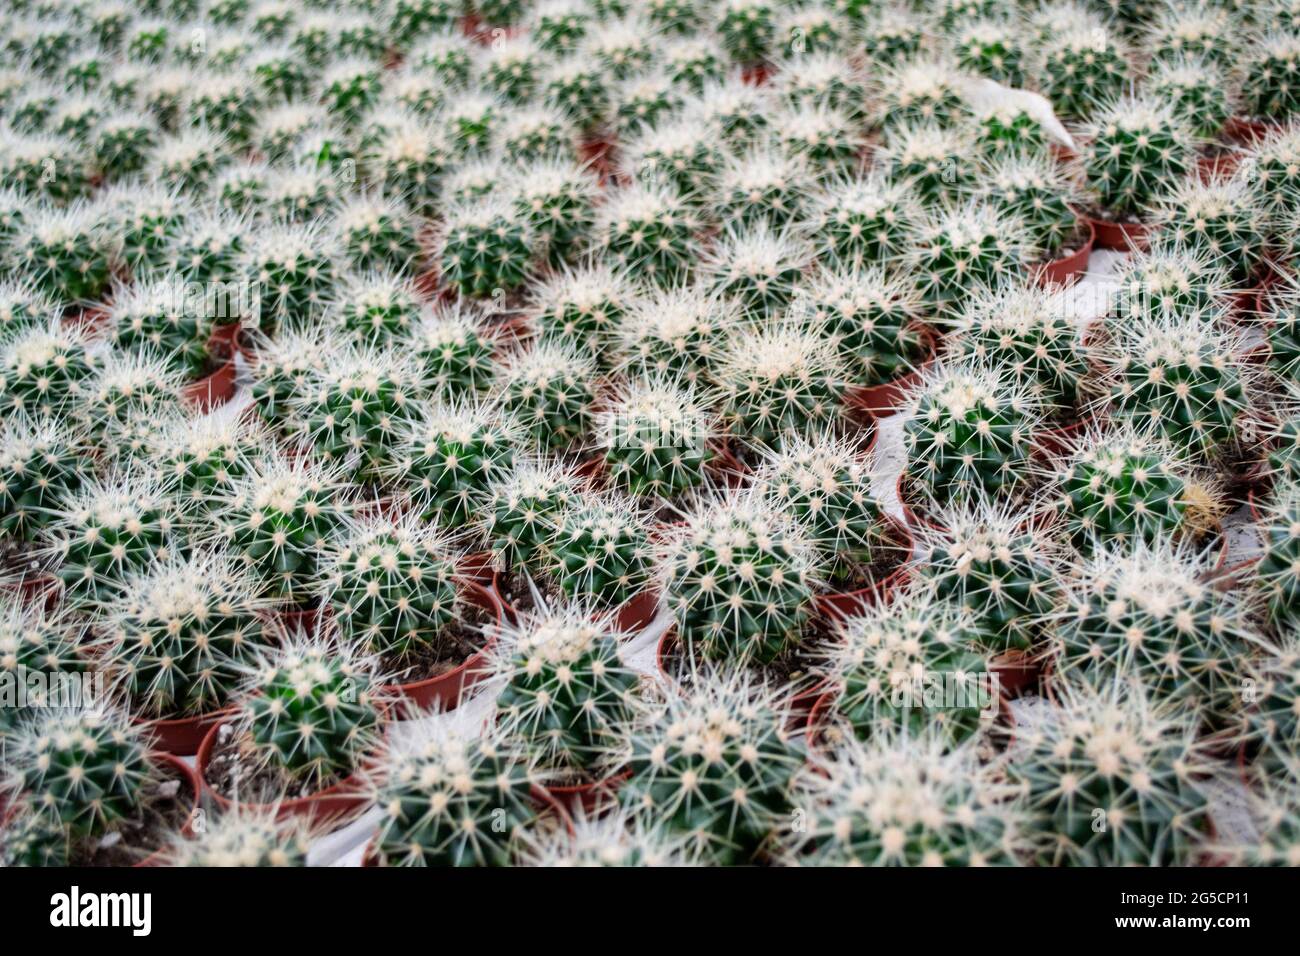 Nahaufnahme von vielen kleinen runden Kakteen mit scharfen gelben Nadeln in Blumentöpfen. Blumenverkauf. Kaktushintergrund. Stockfoto